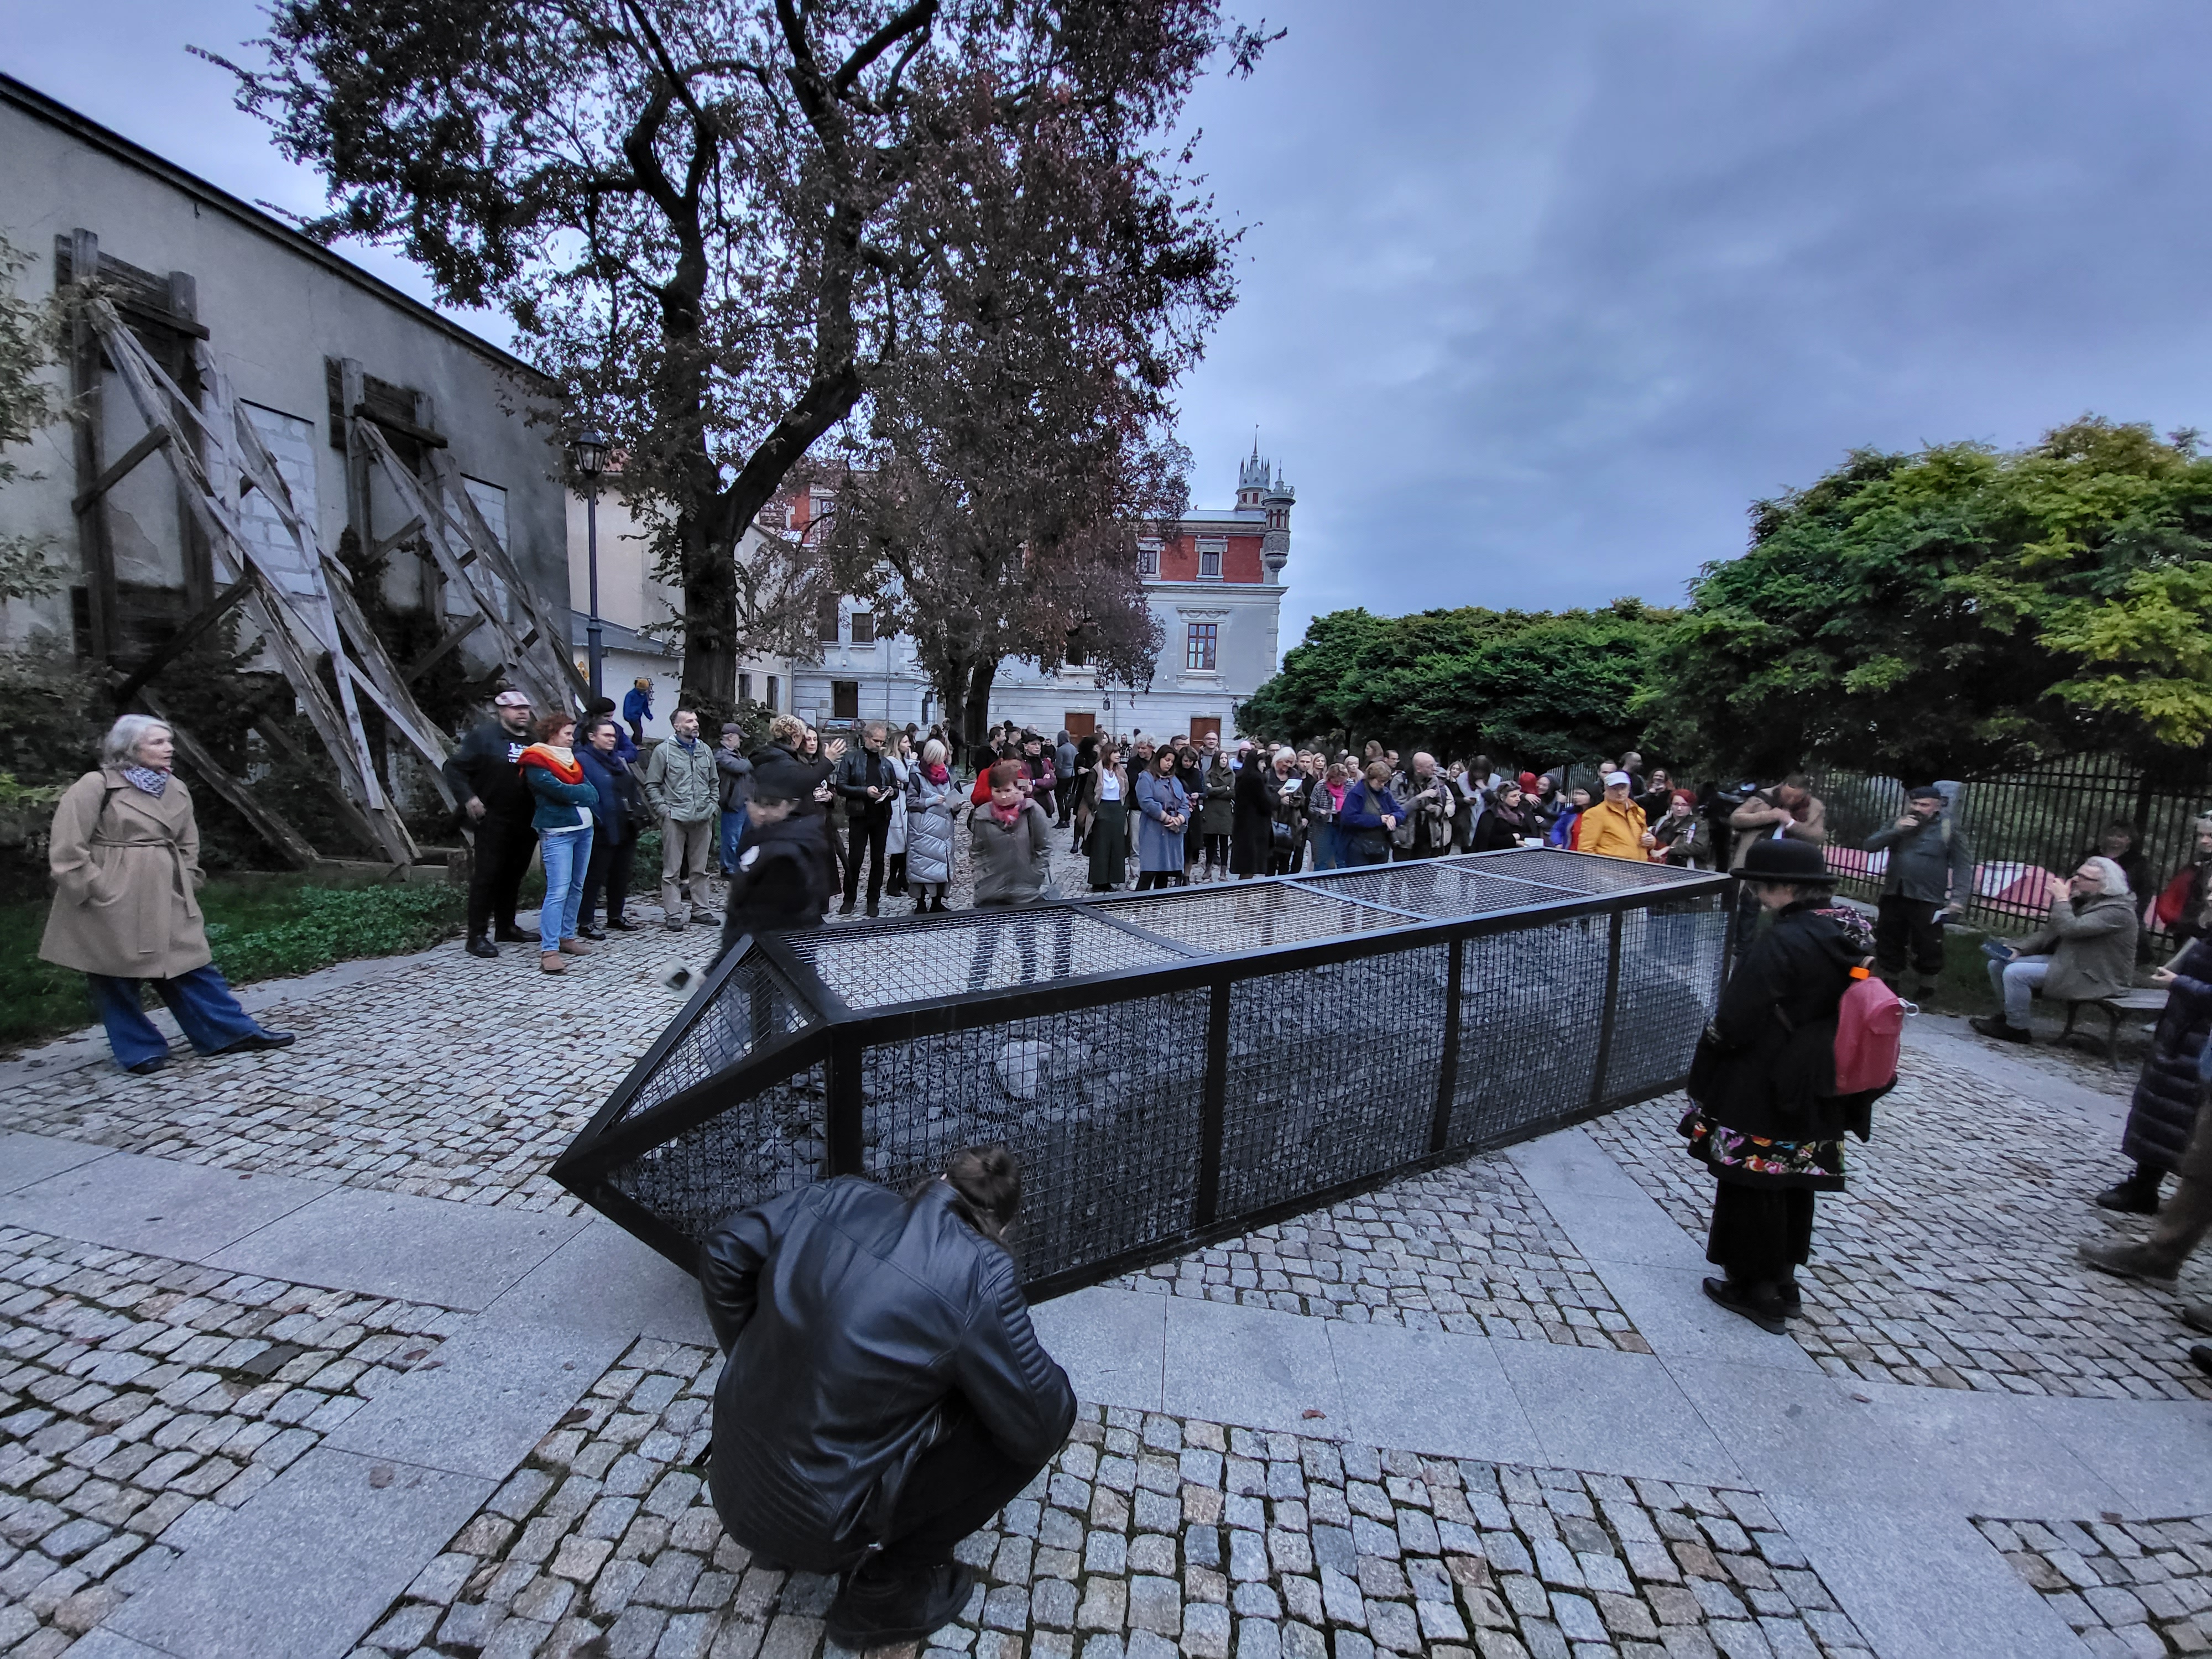 W Lublinie stanął Pomnik Węgla. Carbon Monument można oglądać na Placu Jerzego Giedroycia (zdjęcia)